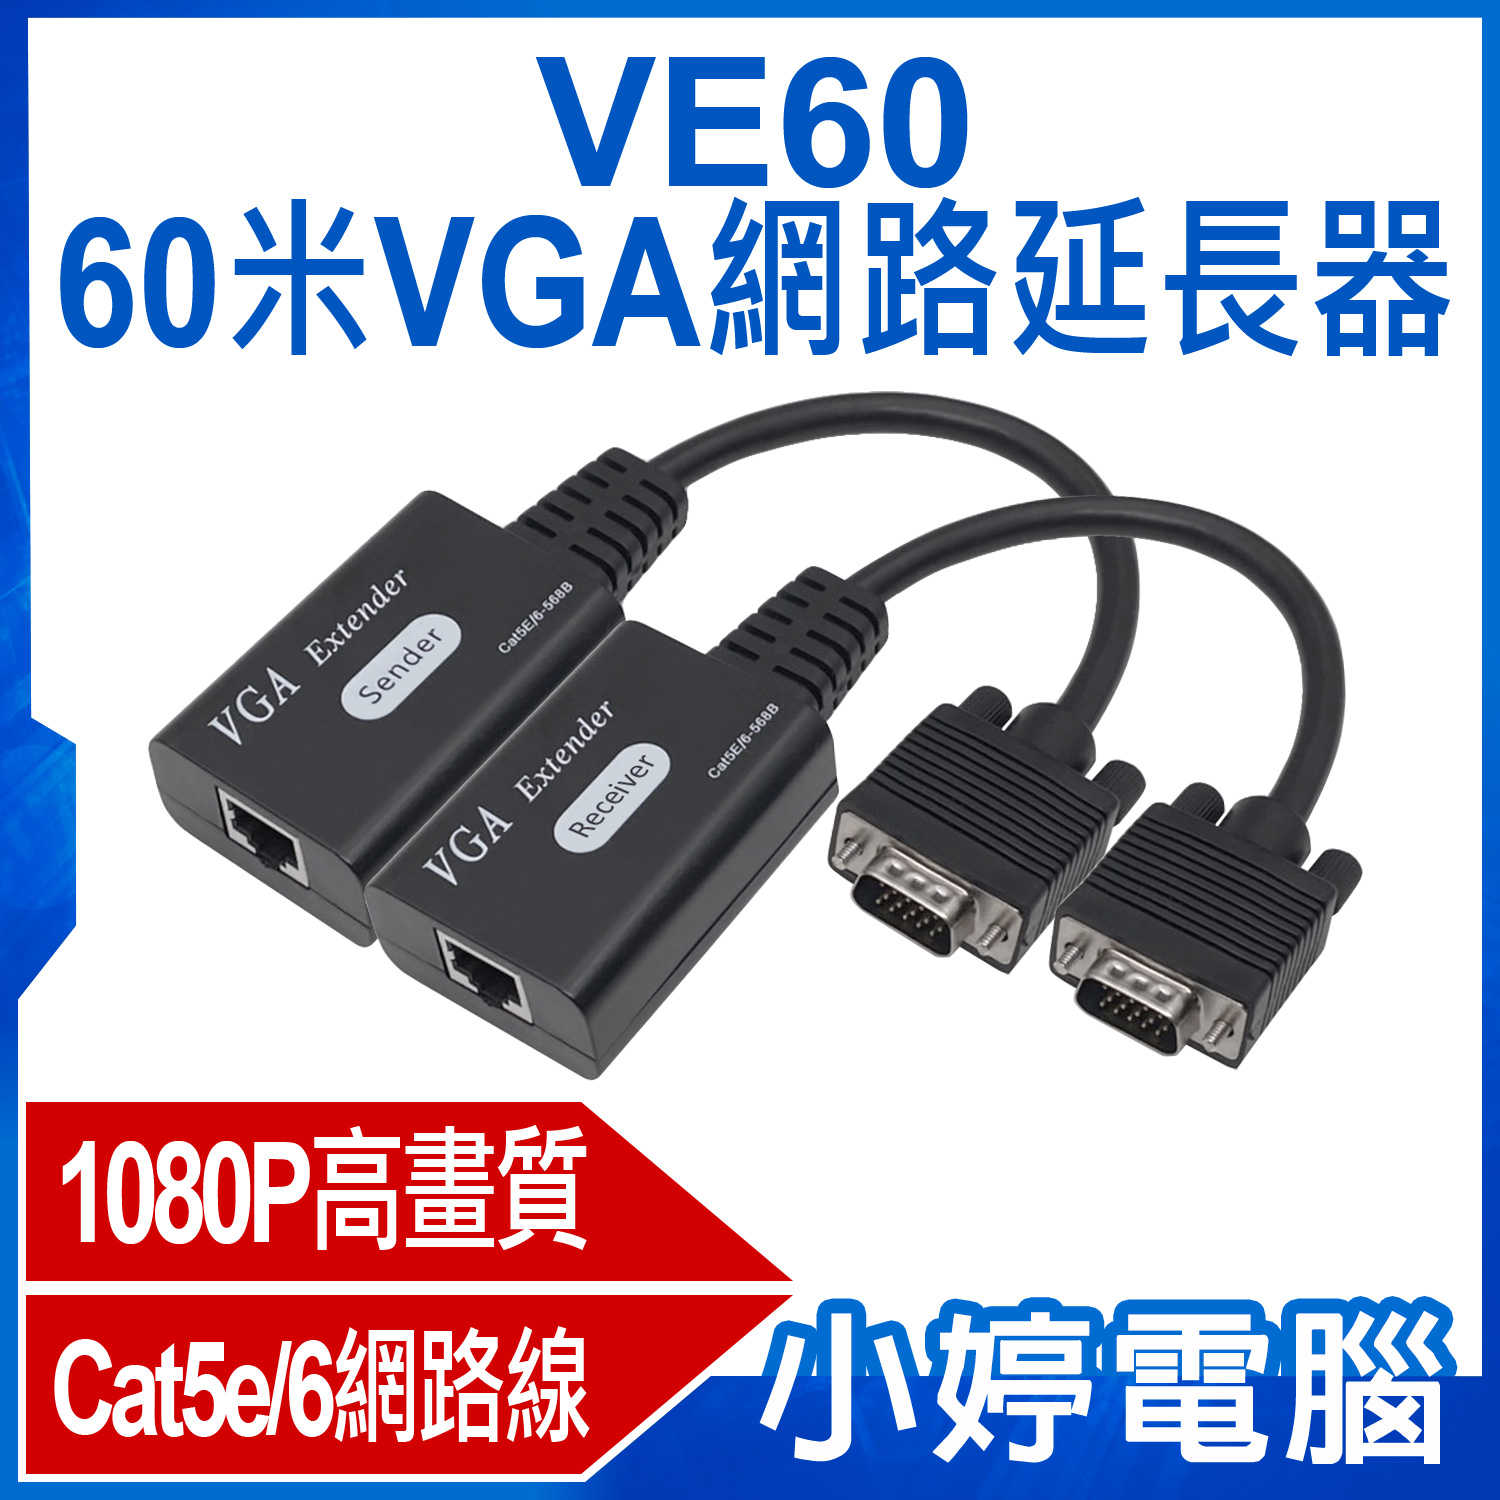 【小婷電腦】VE60 60米VGA網路延長器 1080P高畫質 傳輸60米 Cat5e/6網路線